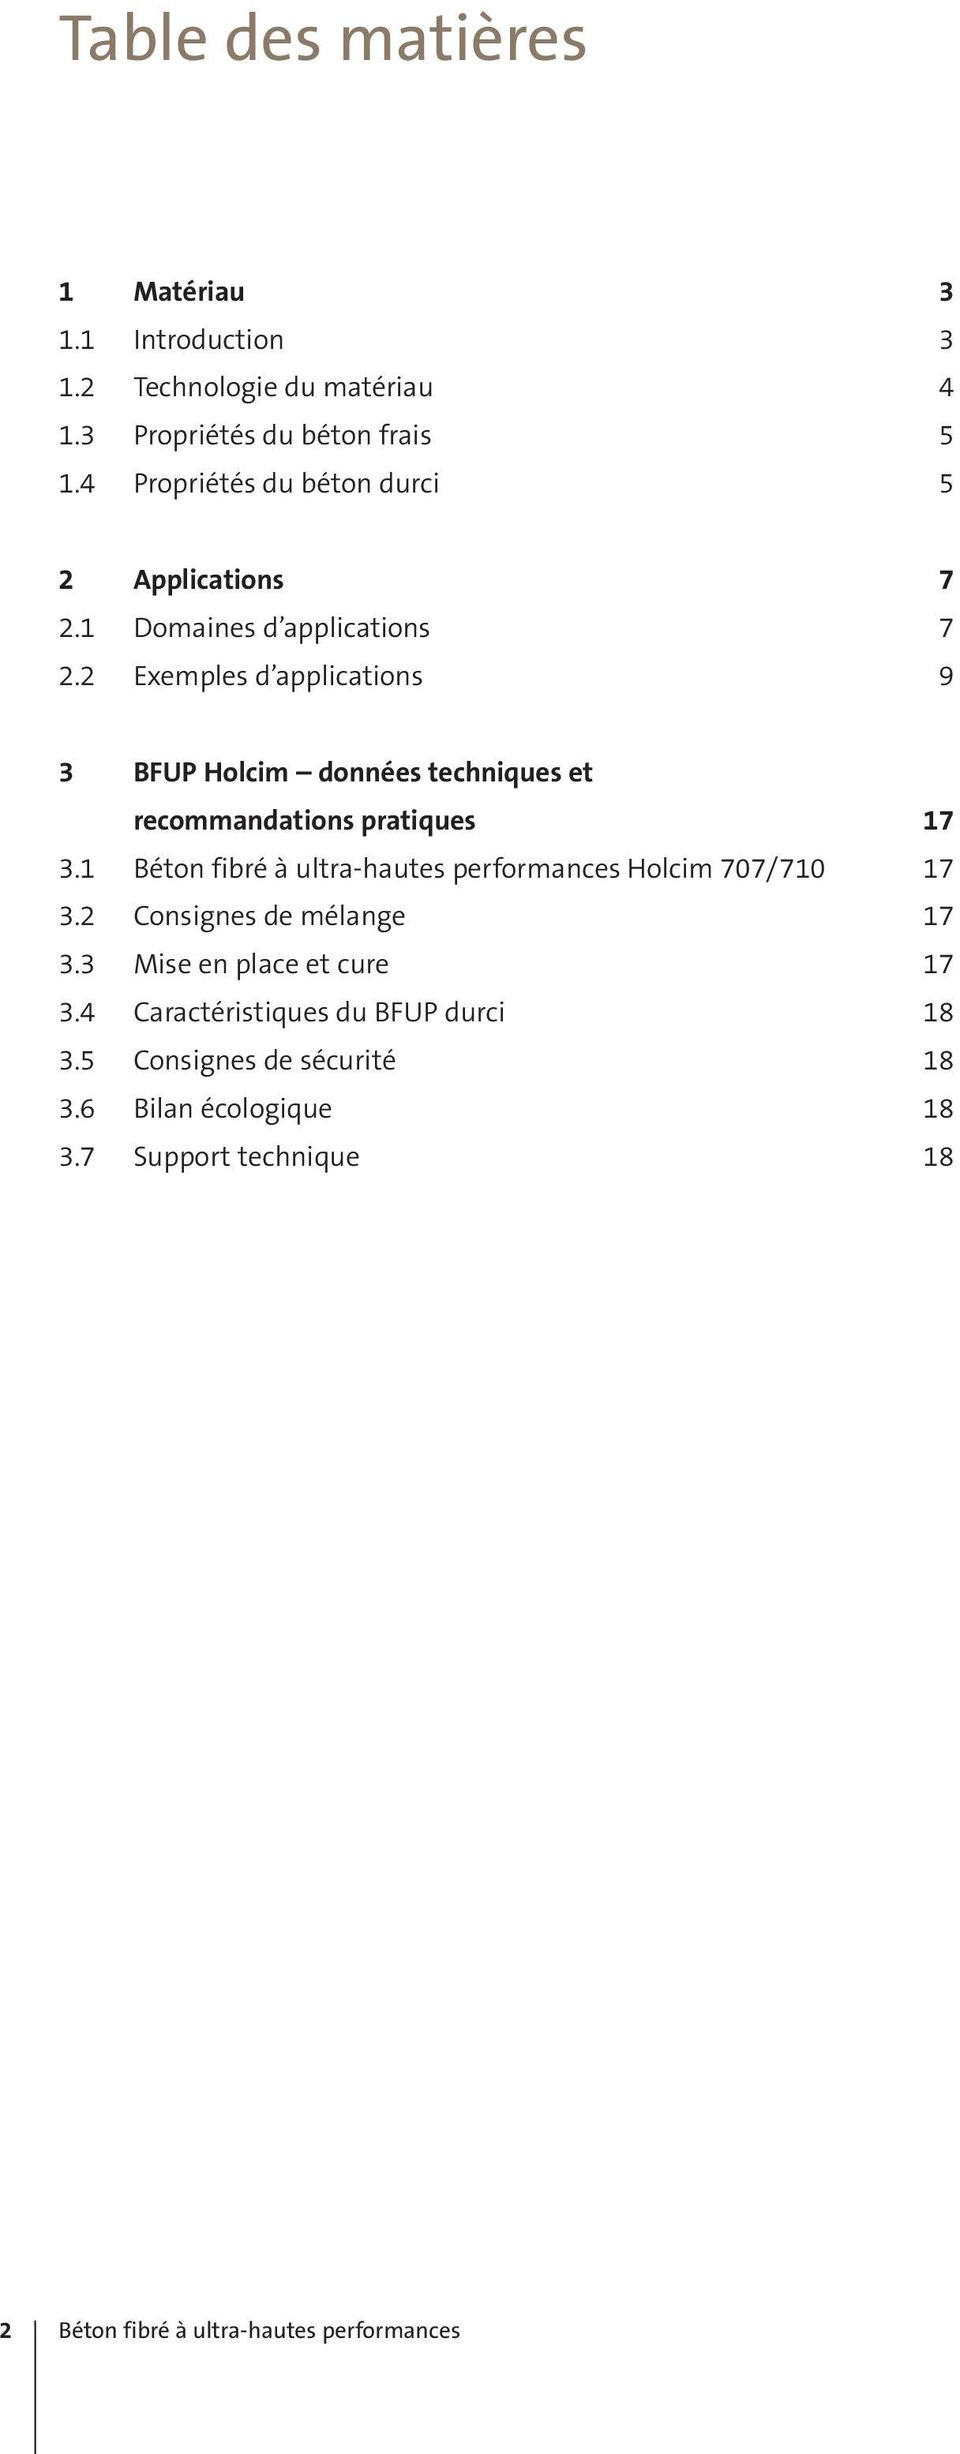 2 Exemples d applications 9 3 BFUP Holcim données techniques et recommandations pratiques 17 3.